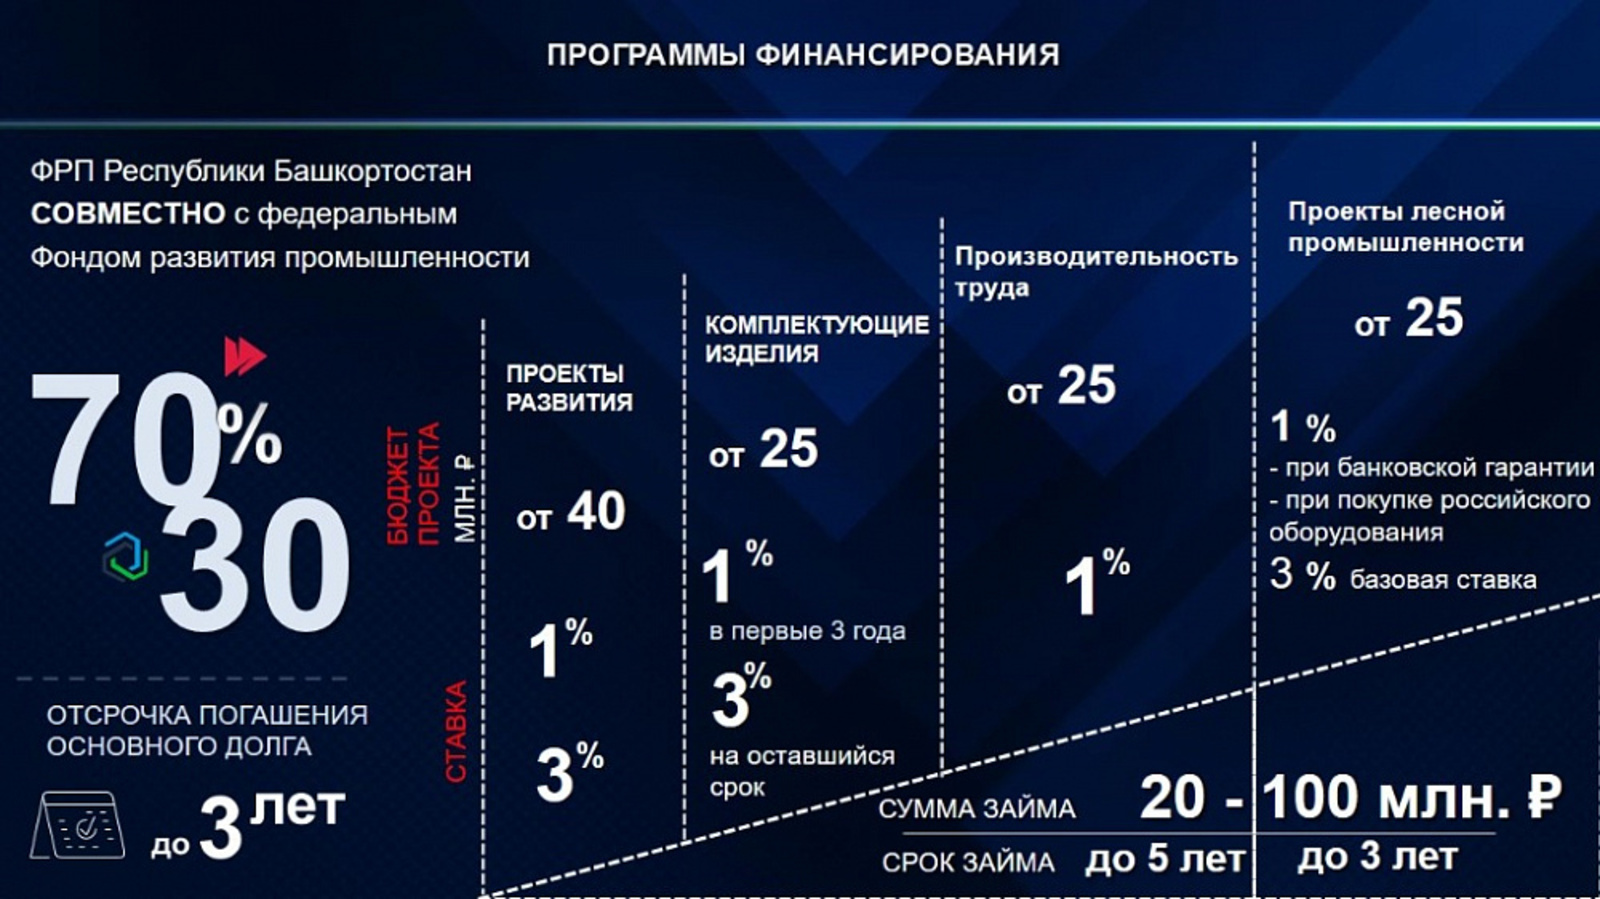 Фонд развития промышленности Башкортостана поддержал 87 проектов стоимостью 30,2 млрд рублей